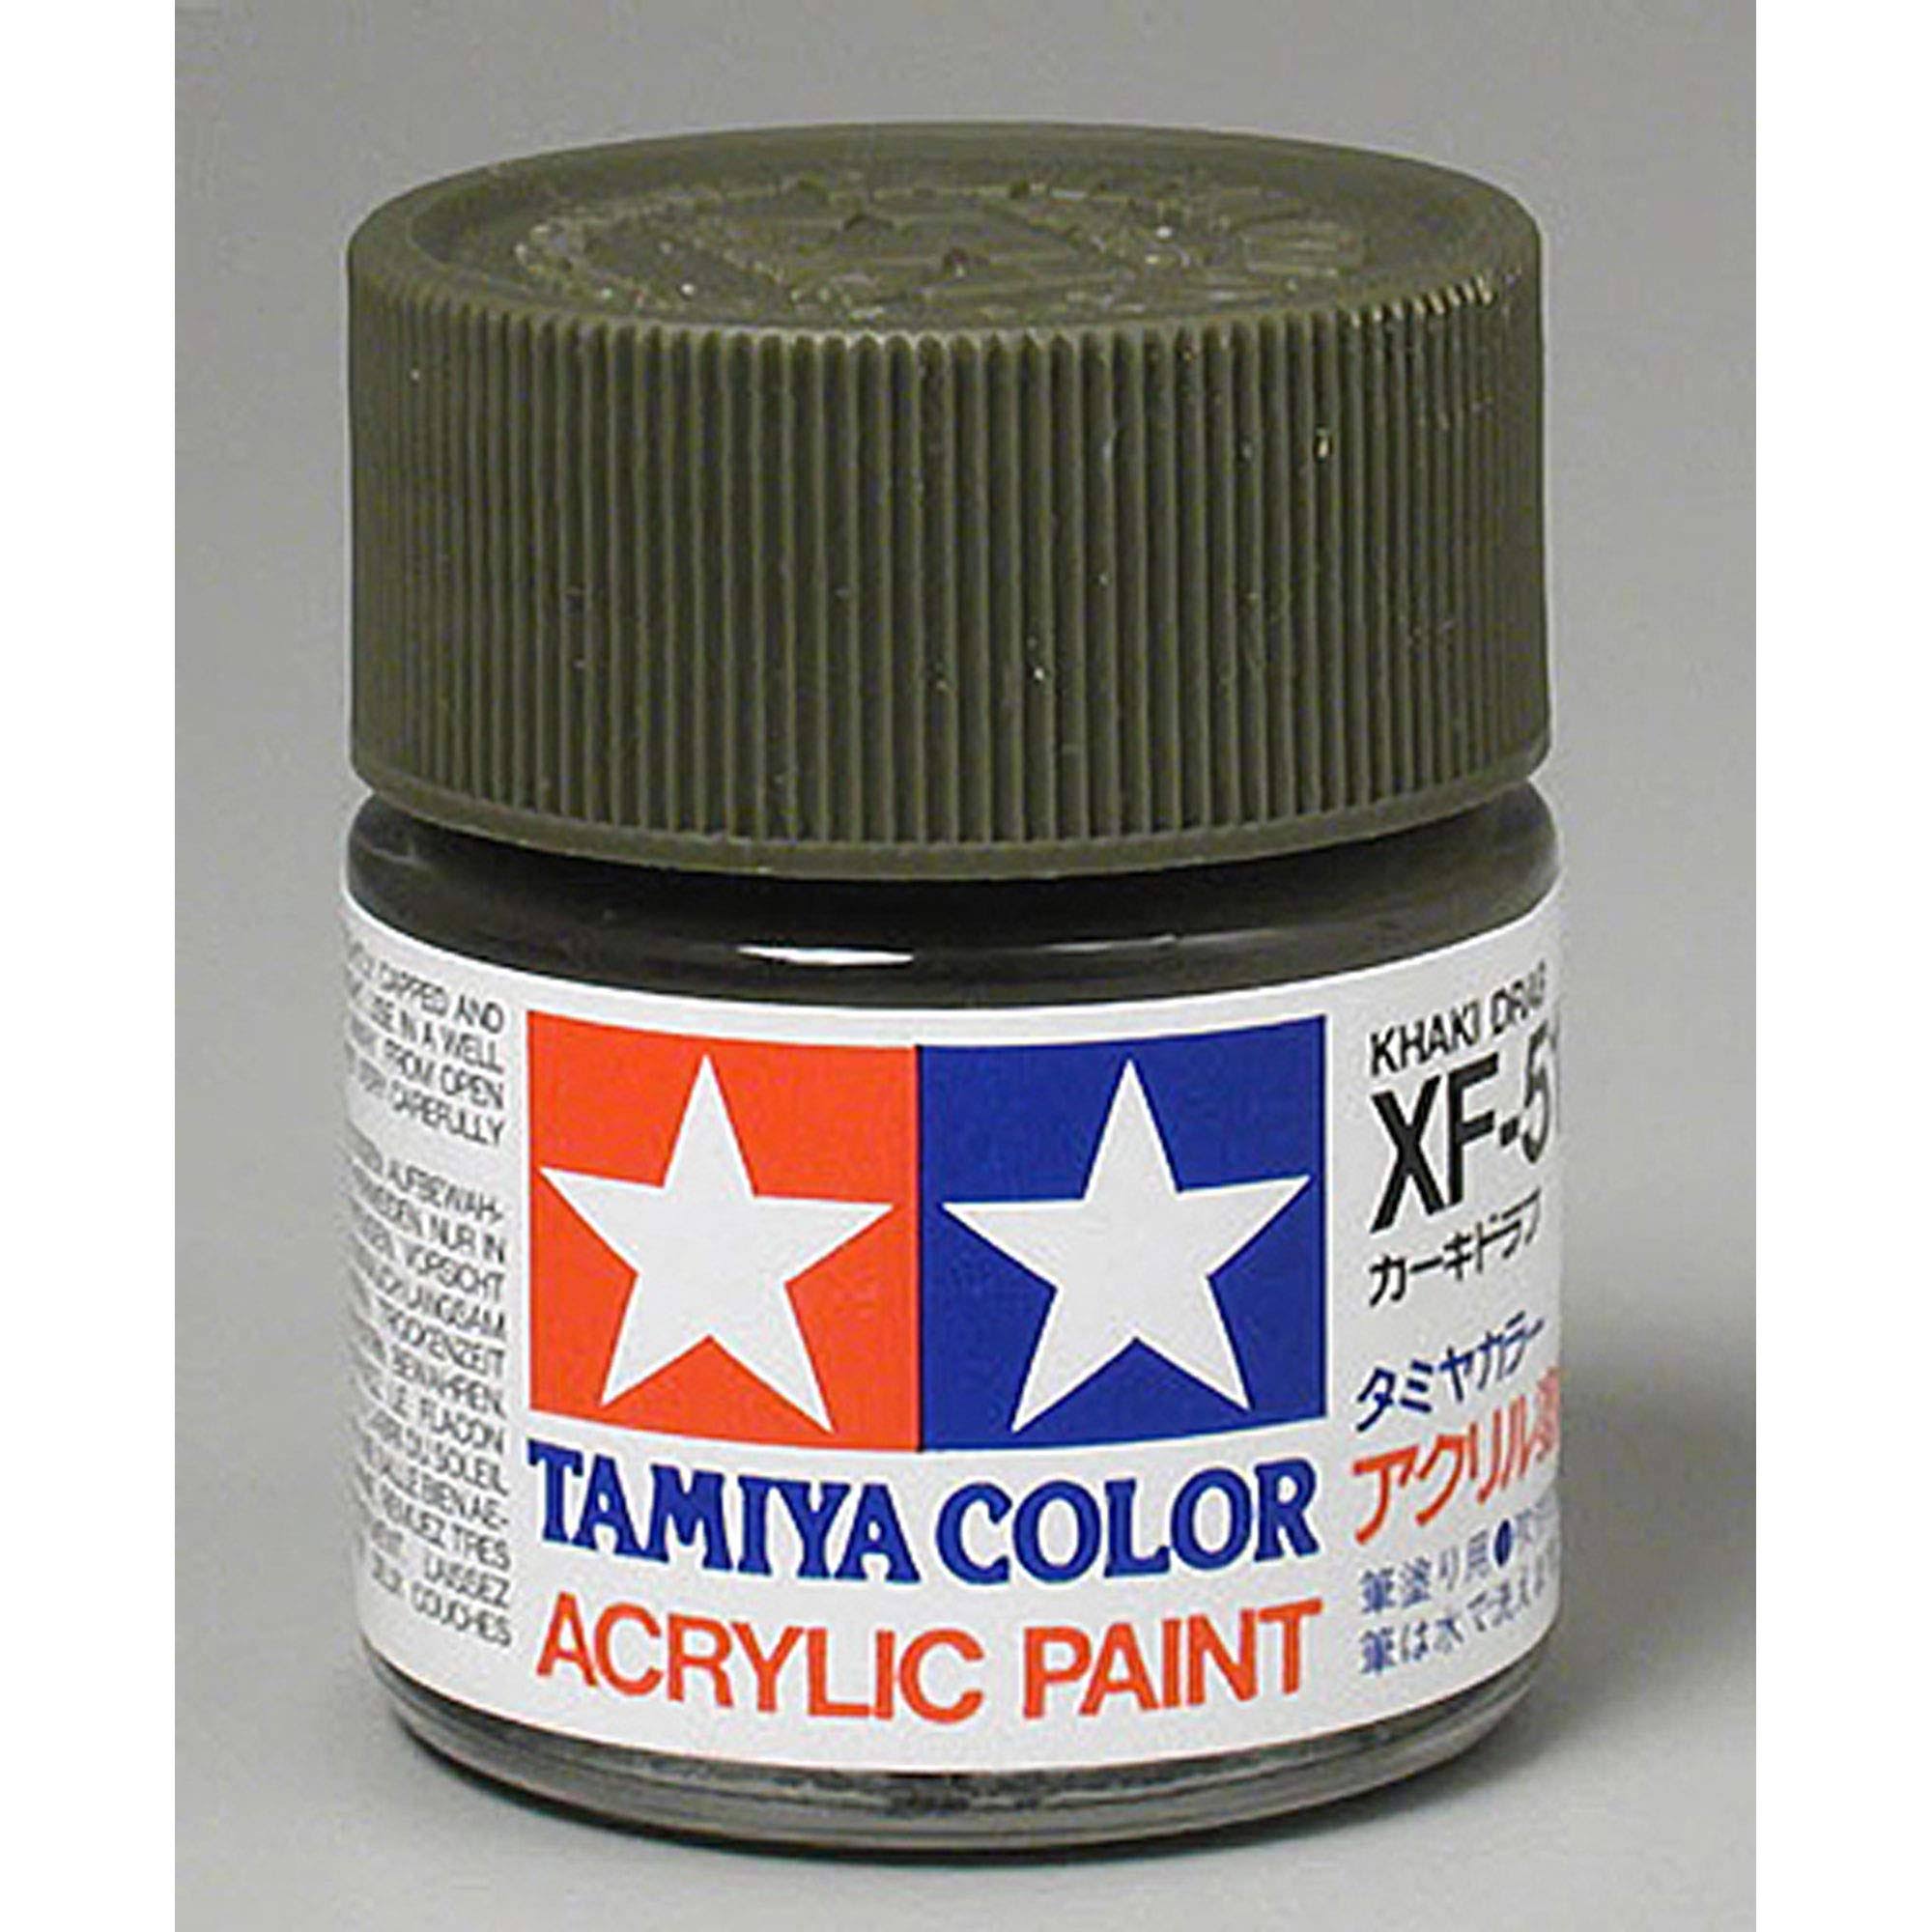 Tamiya Acrylic XF51 Khaki Drab 23ml Bottle